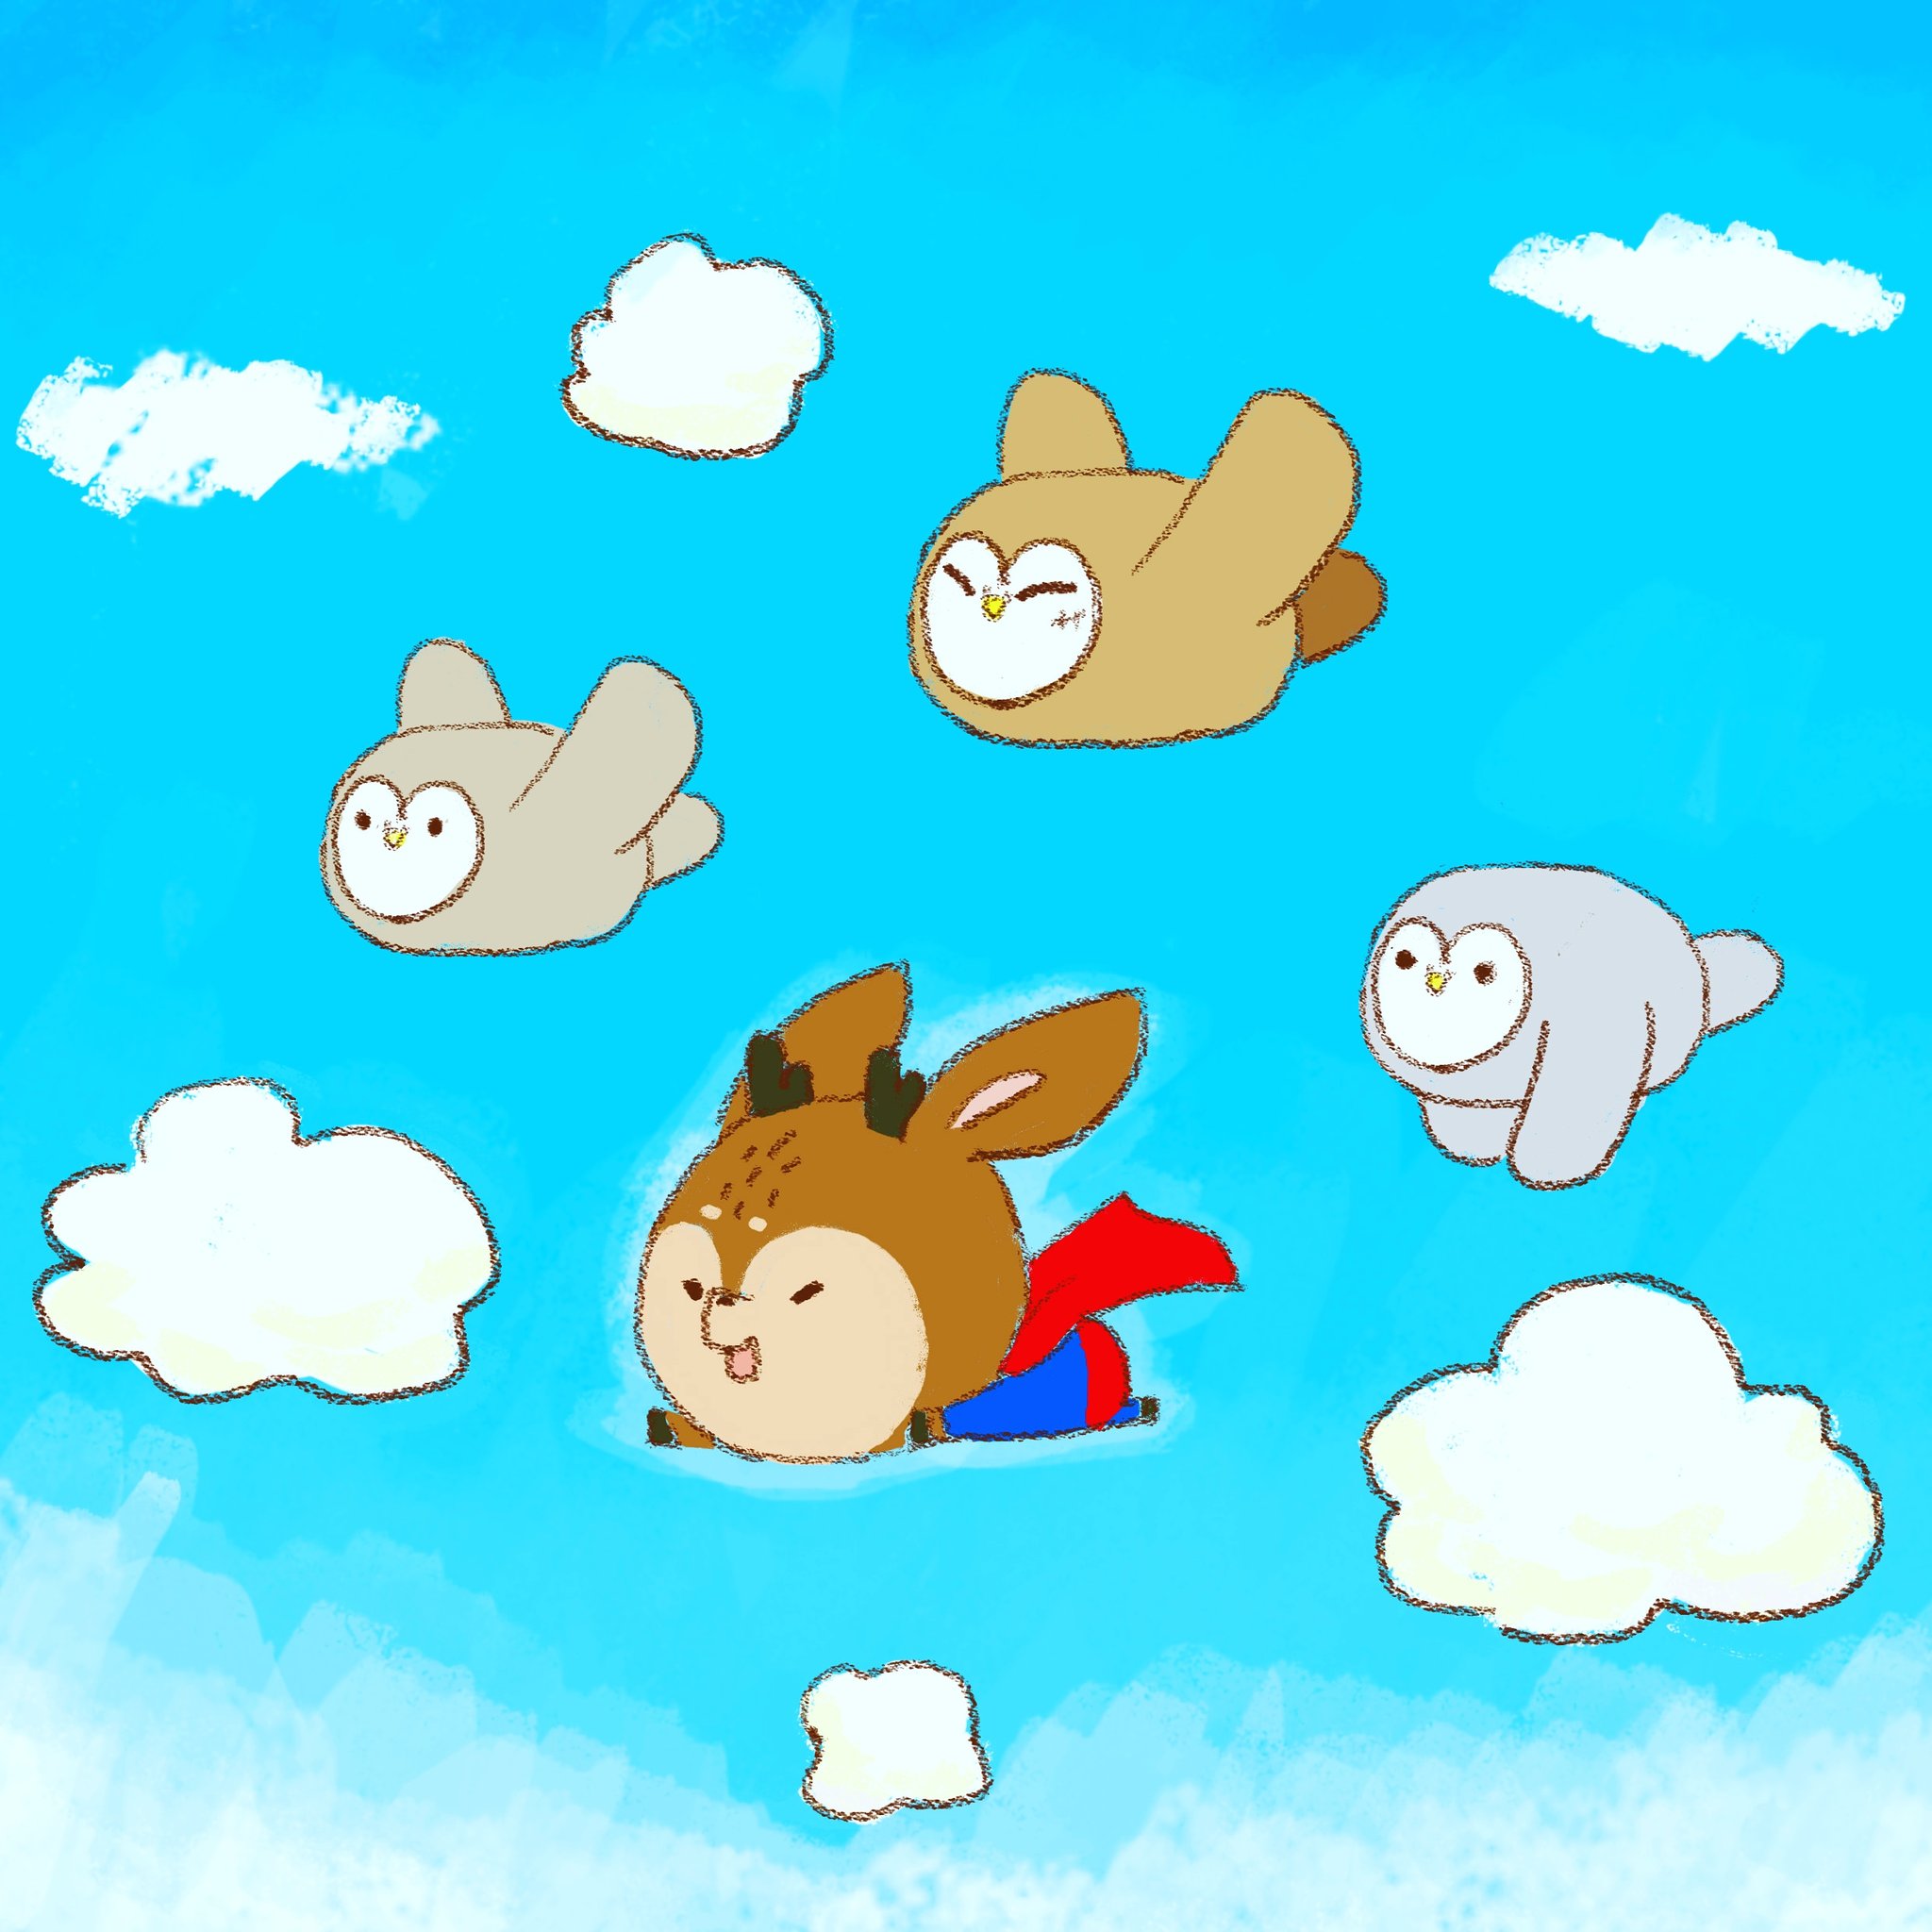 啊 動物 در توییتر 小竹超人 スーパー竹 Superbamboo Superman Bamboo Fly Hero Cute nimals Animal Drawing Computergraphic Illustration Manga Character Gallary イラスト スケッチ イラストレーター スーパーマン 竹 ヒーロー 空 飛ぶ